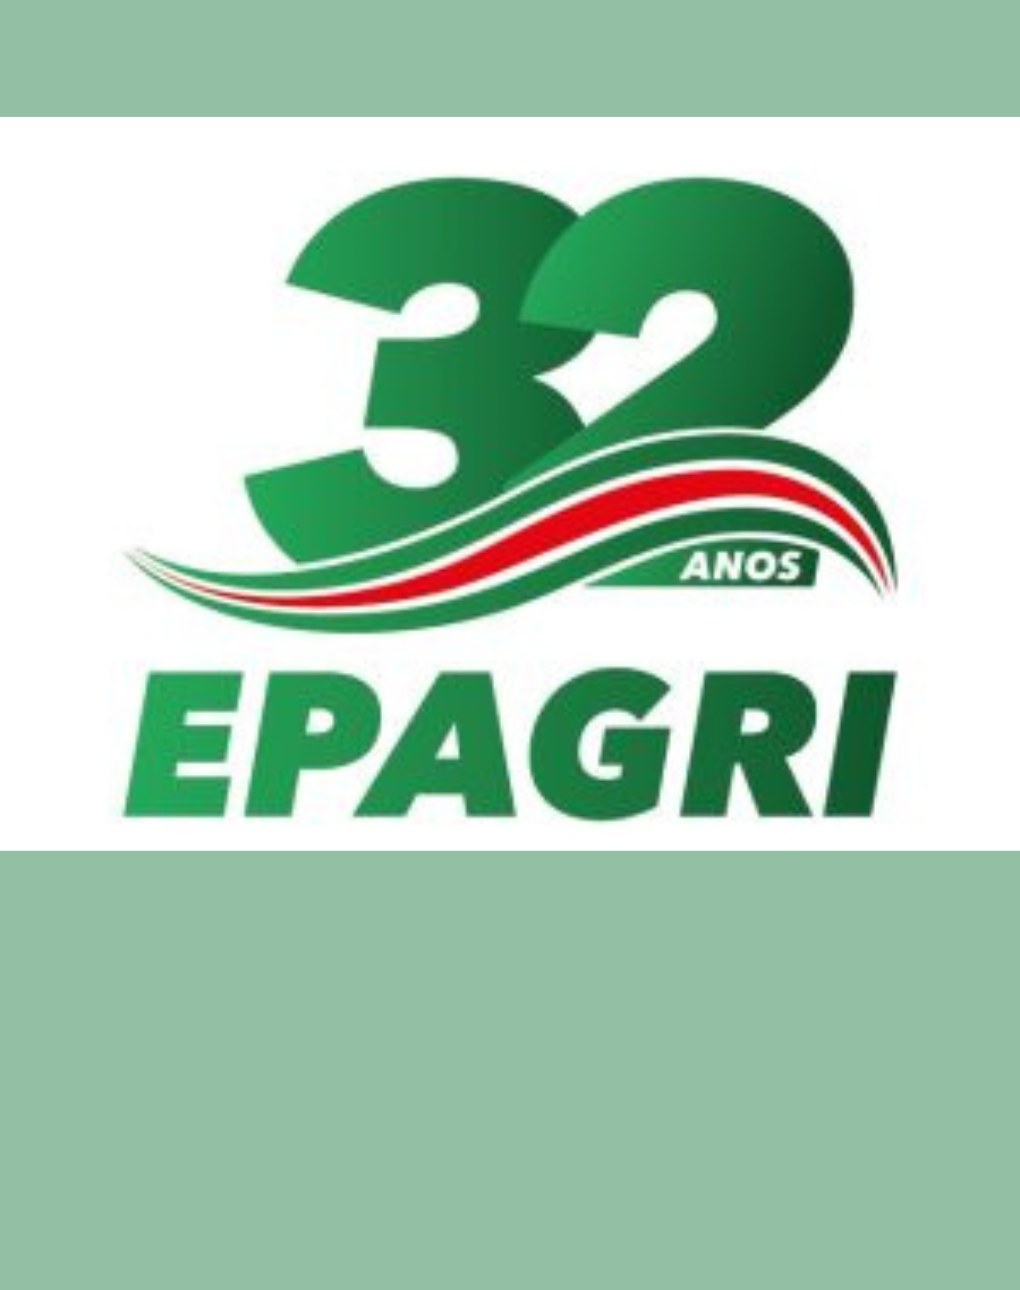 Epagri celebra 32 anos com reconhecimento nacional pela excelência em gestão e governança